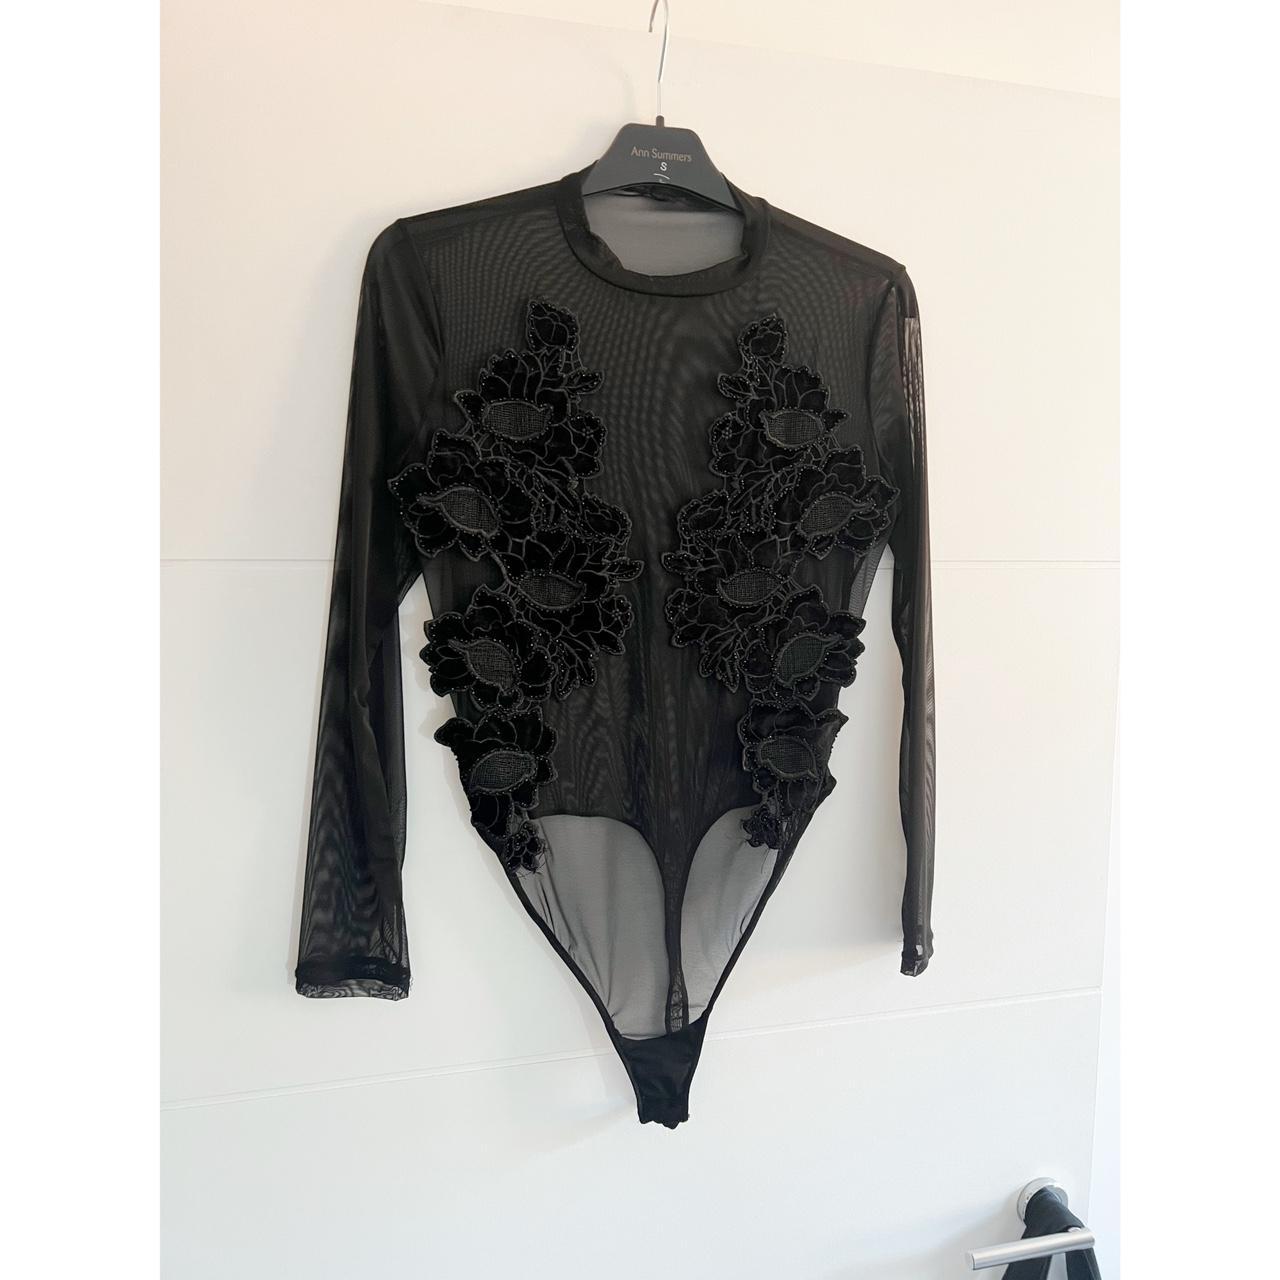 Ann summers modern lover bodysuit. Black mesh body... - Depop